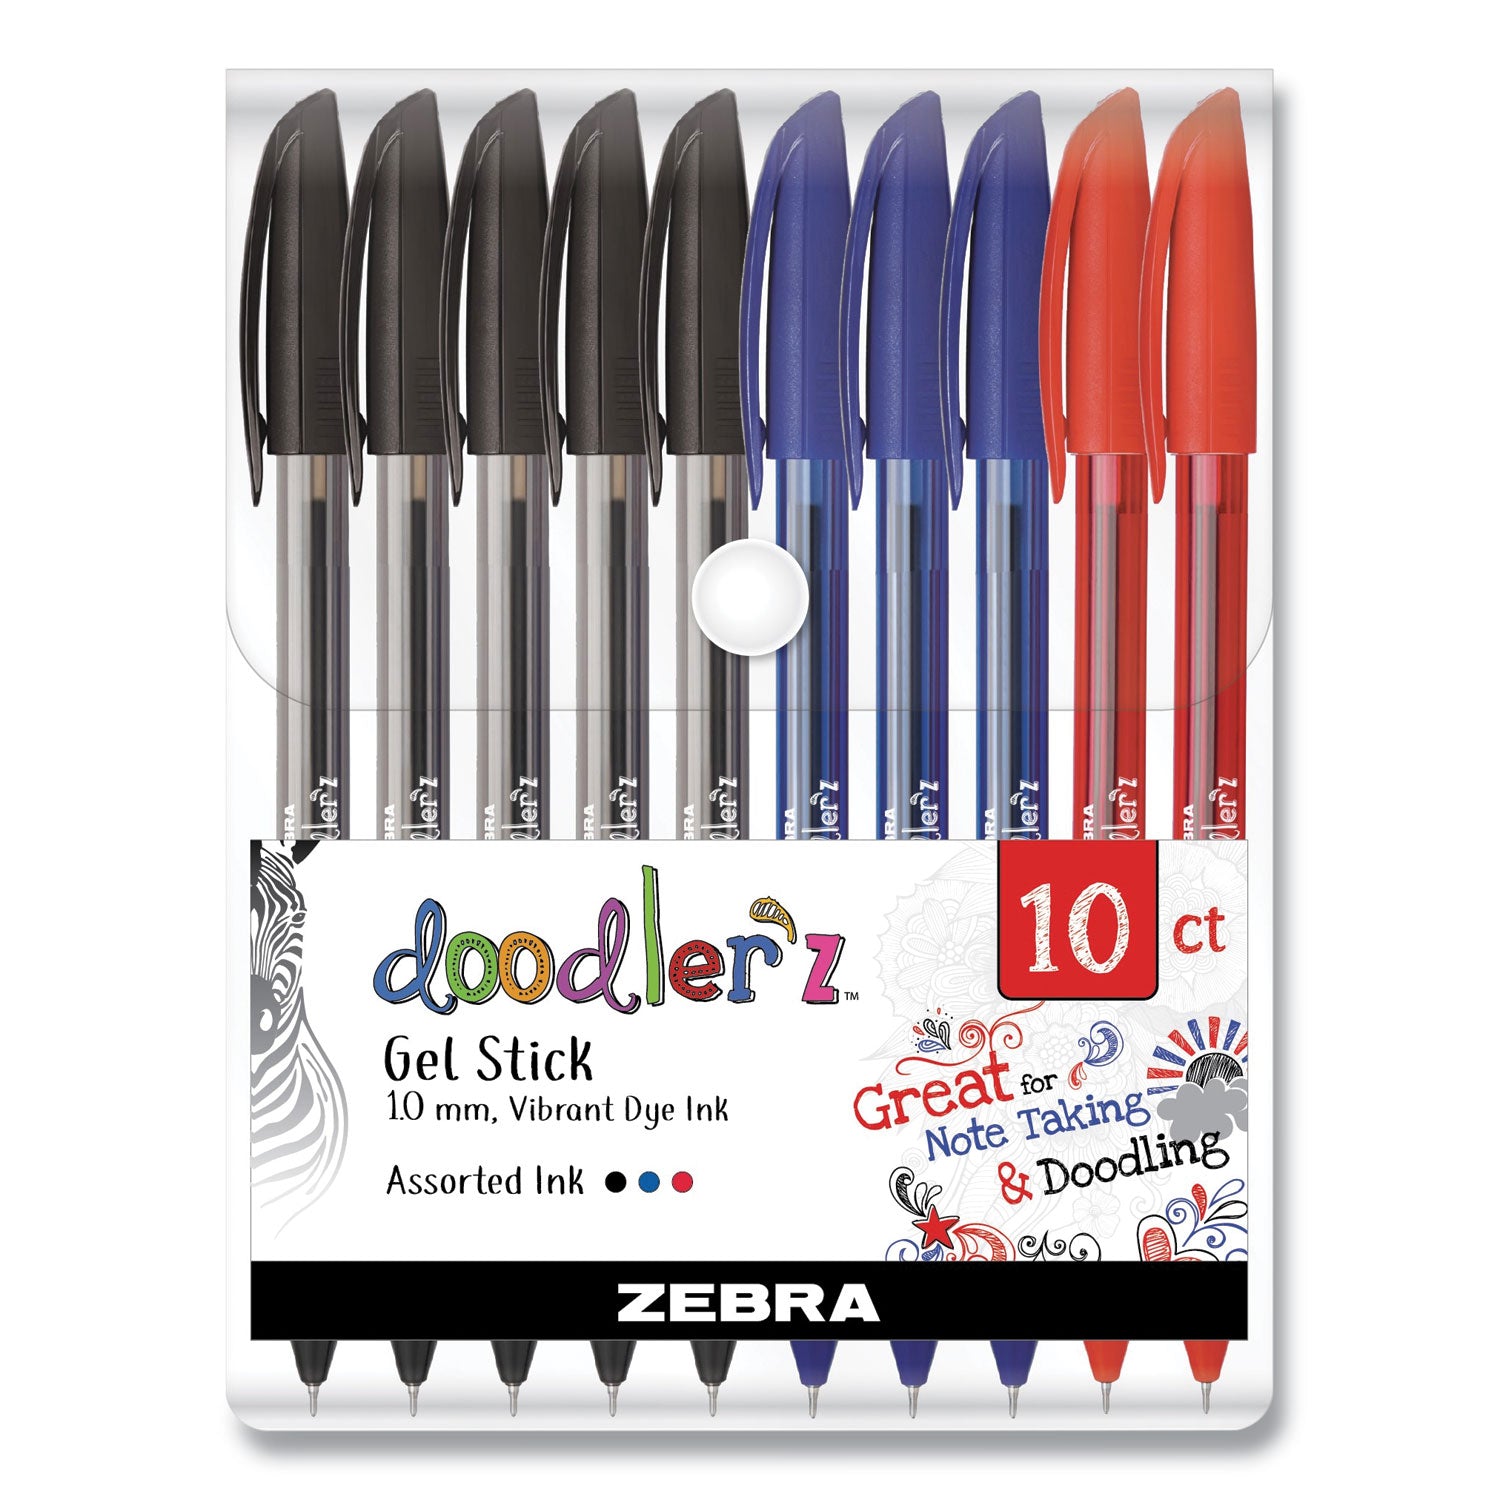 doodlerz-gel-pen-stick-bold-1-mm-assorted-ink-and-barrel-colors-10-pack_zeb41970 - 1